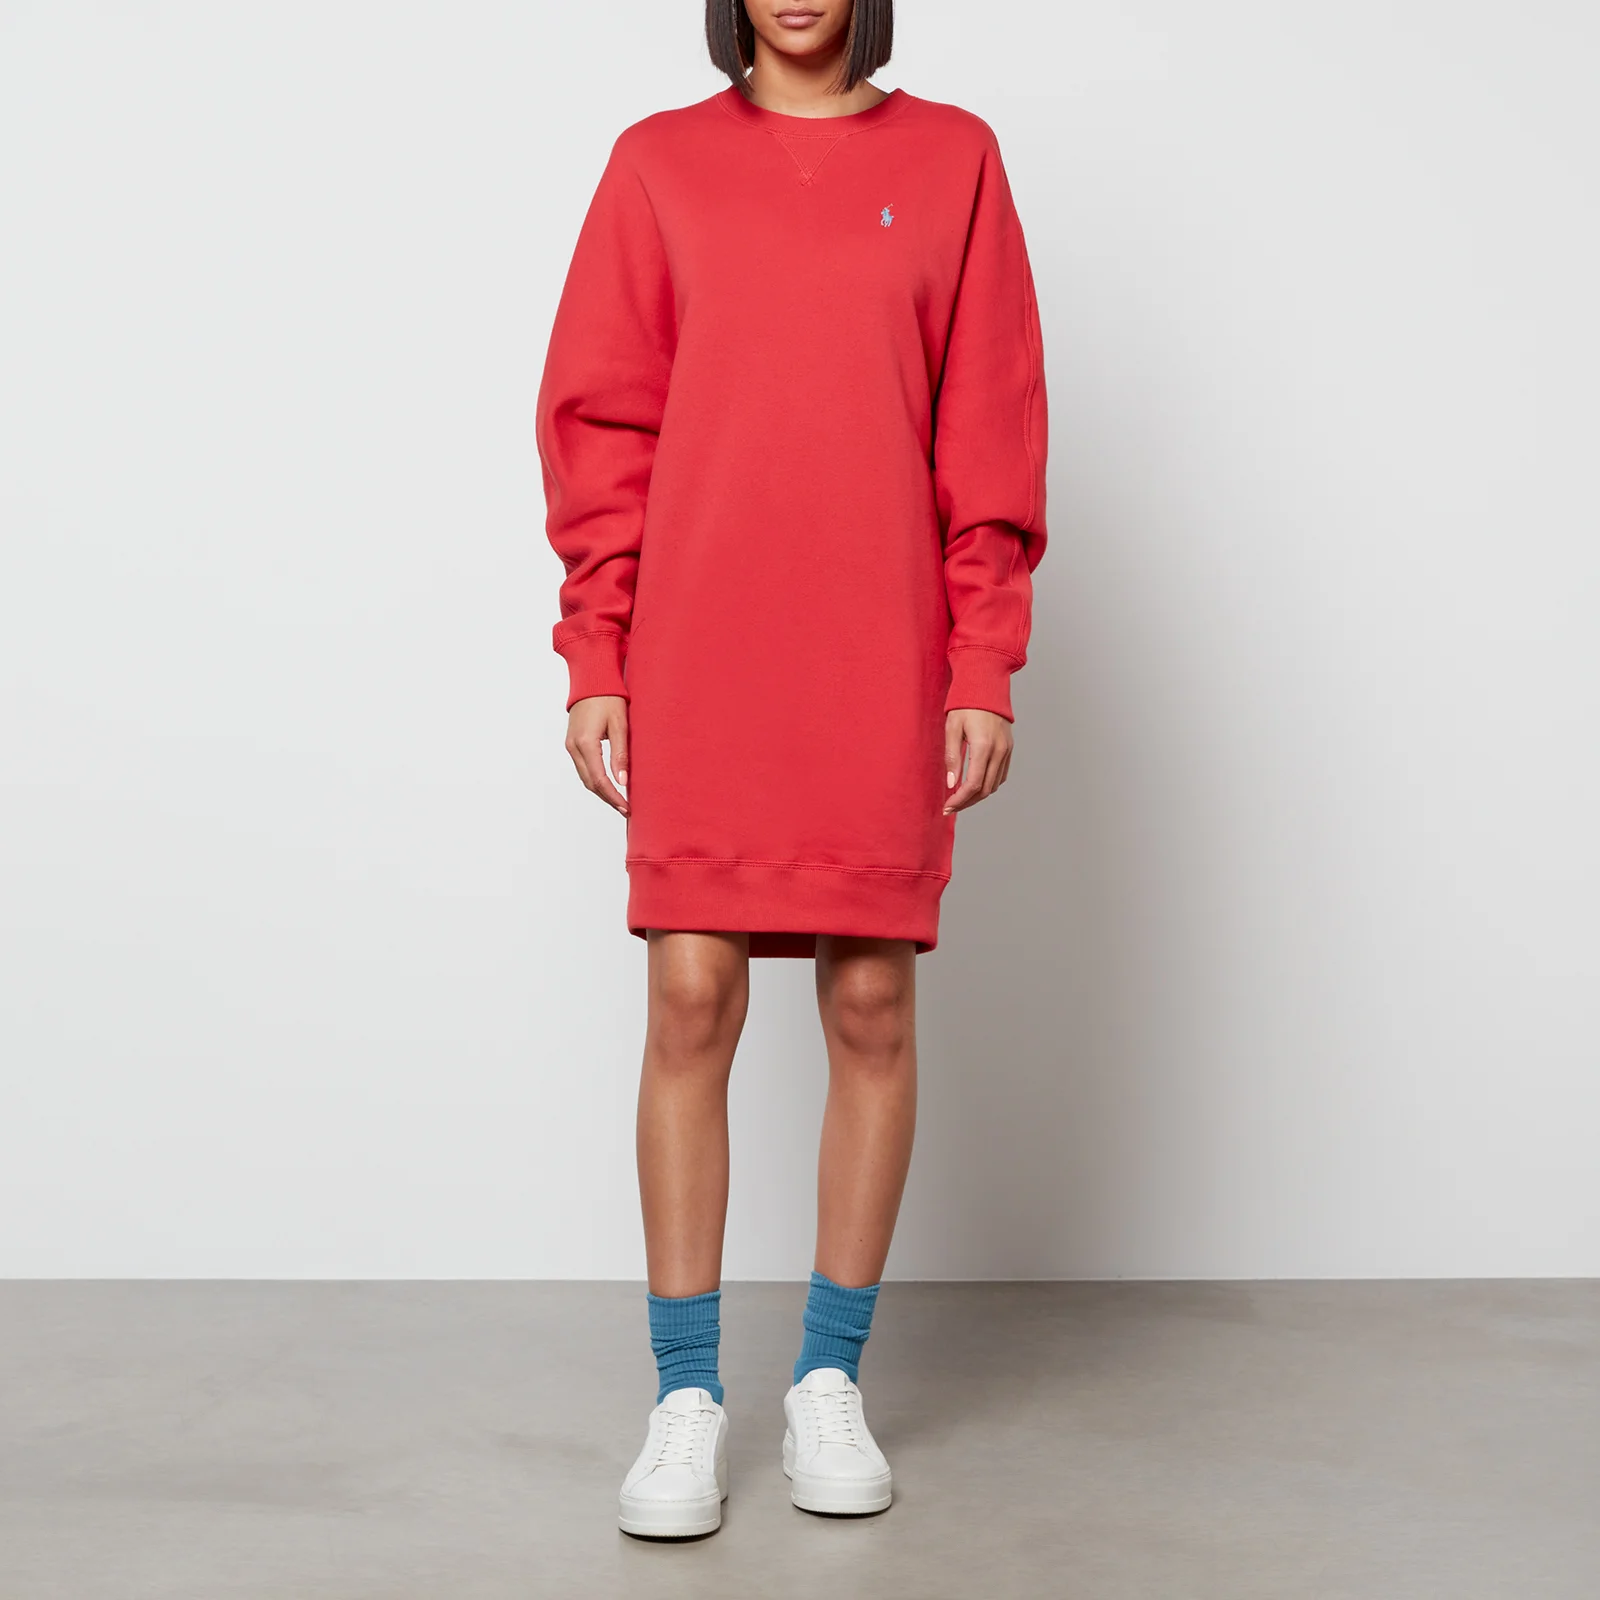 Polo Ralph Lauren Women's Batwing Sweatshirt Dress - Starboard Red Image 1